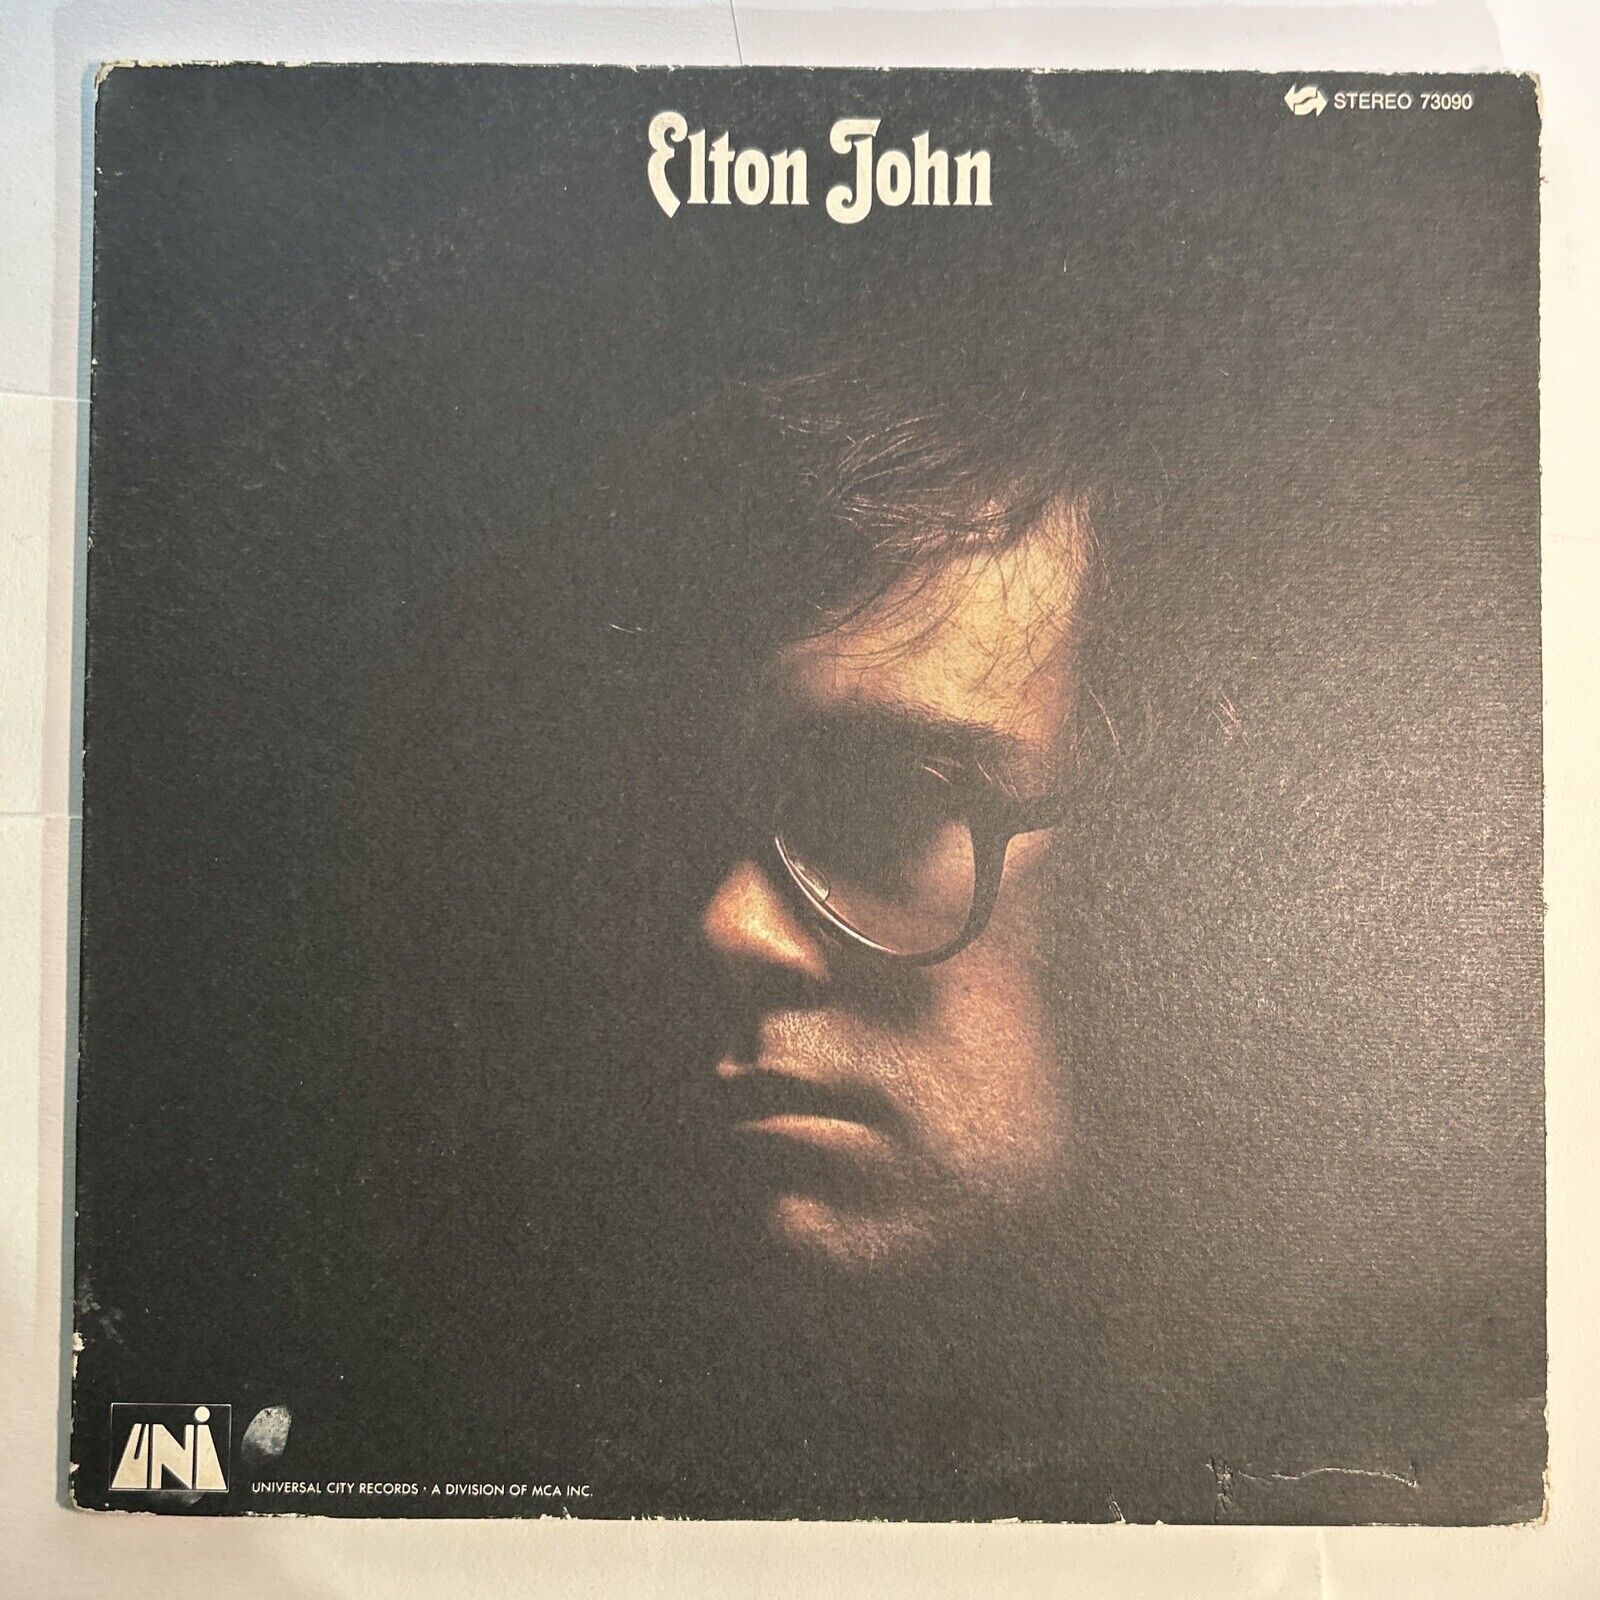 Elton John Self Titled Vinyl Lp UNI 73090 Gatefold 12” Record TESTED